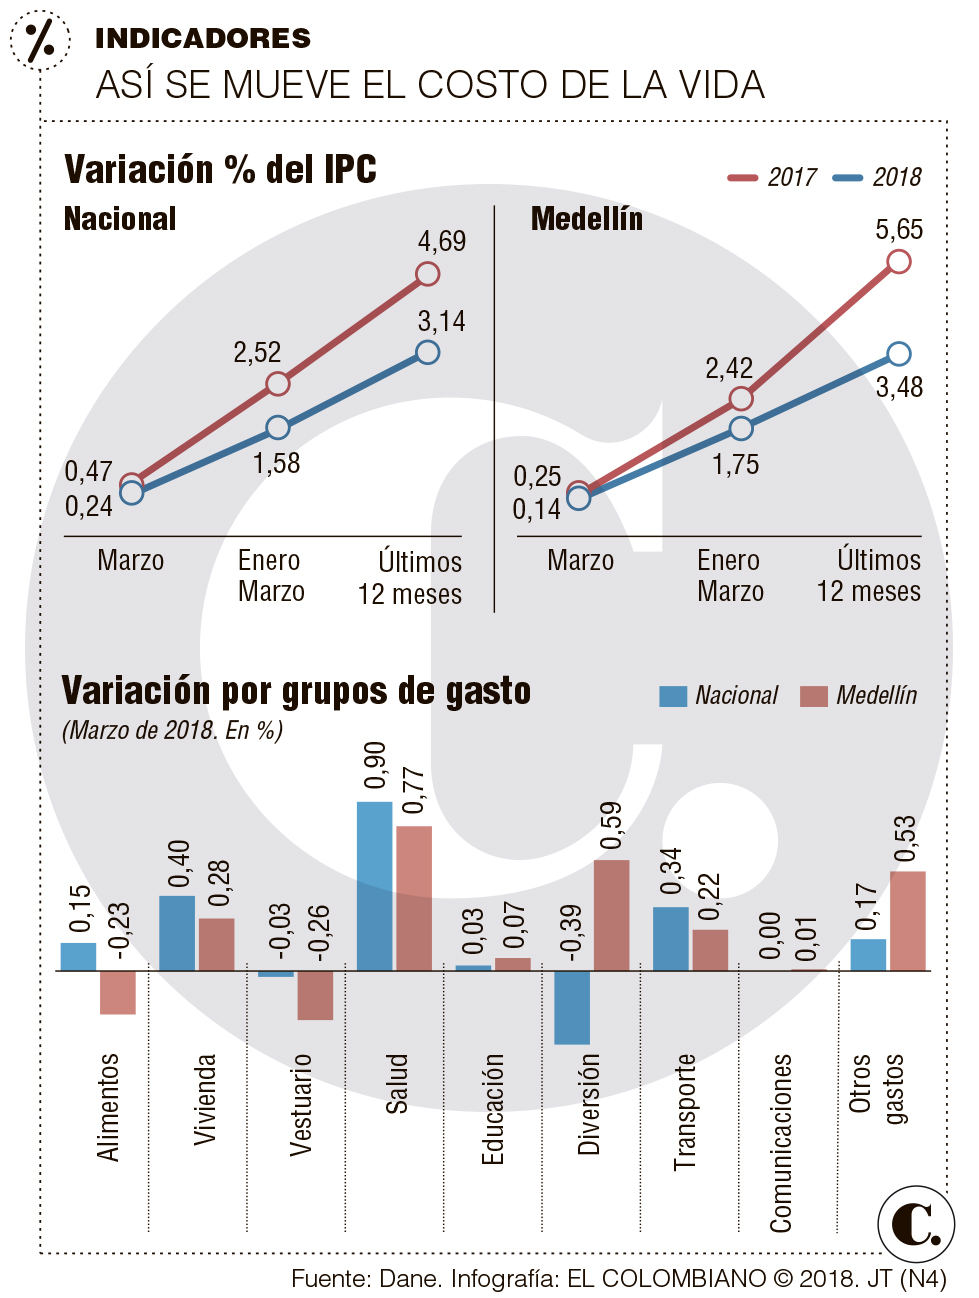 Costo de vida subió 0,14 % en Medellín: Dane